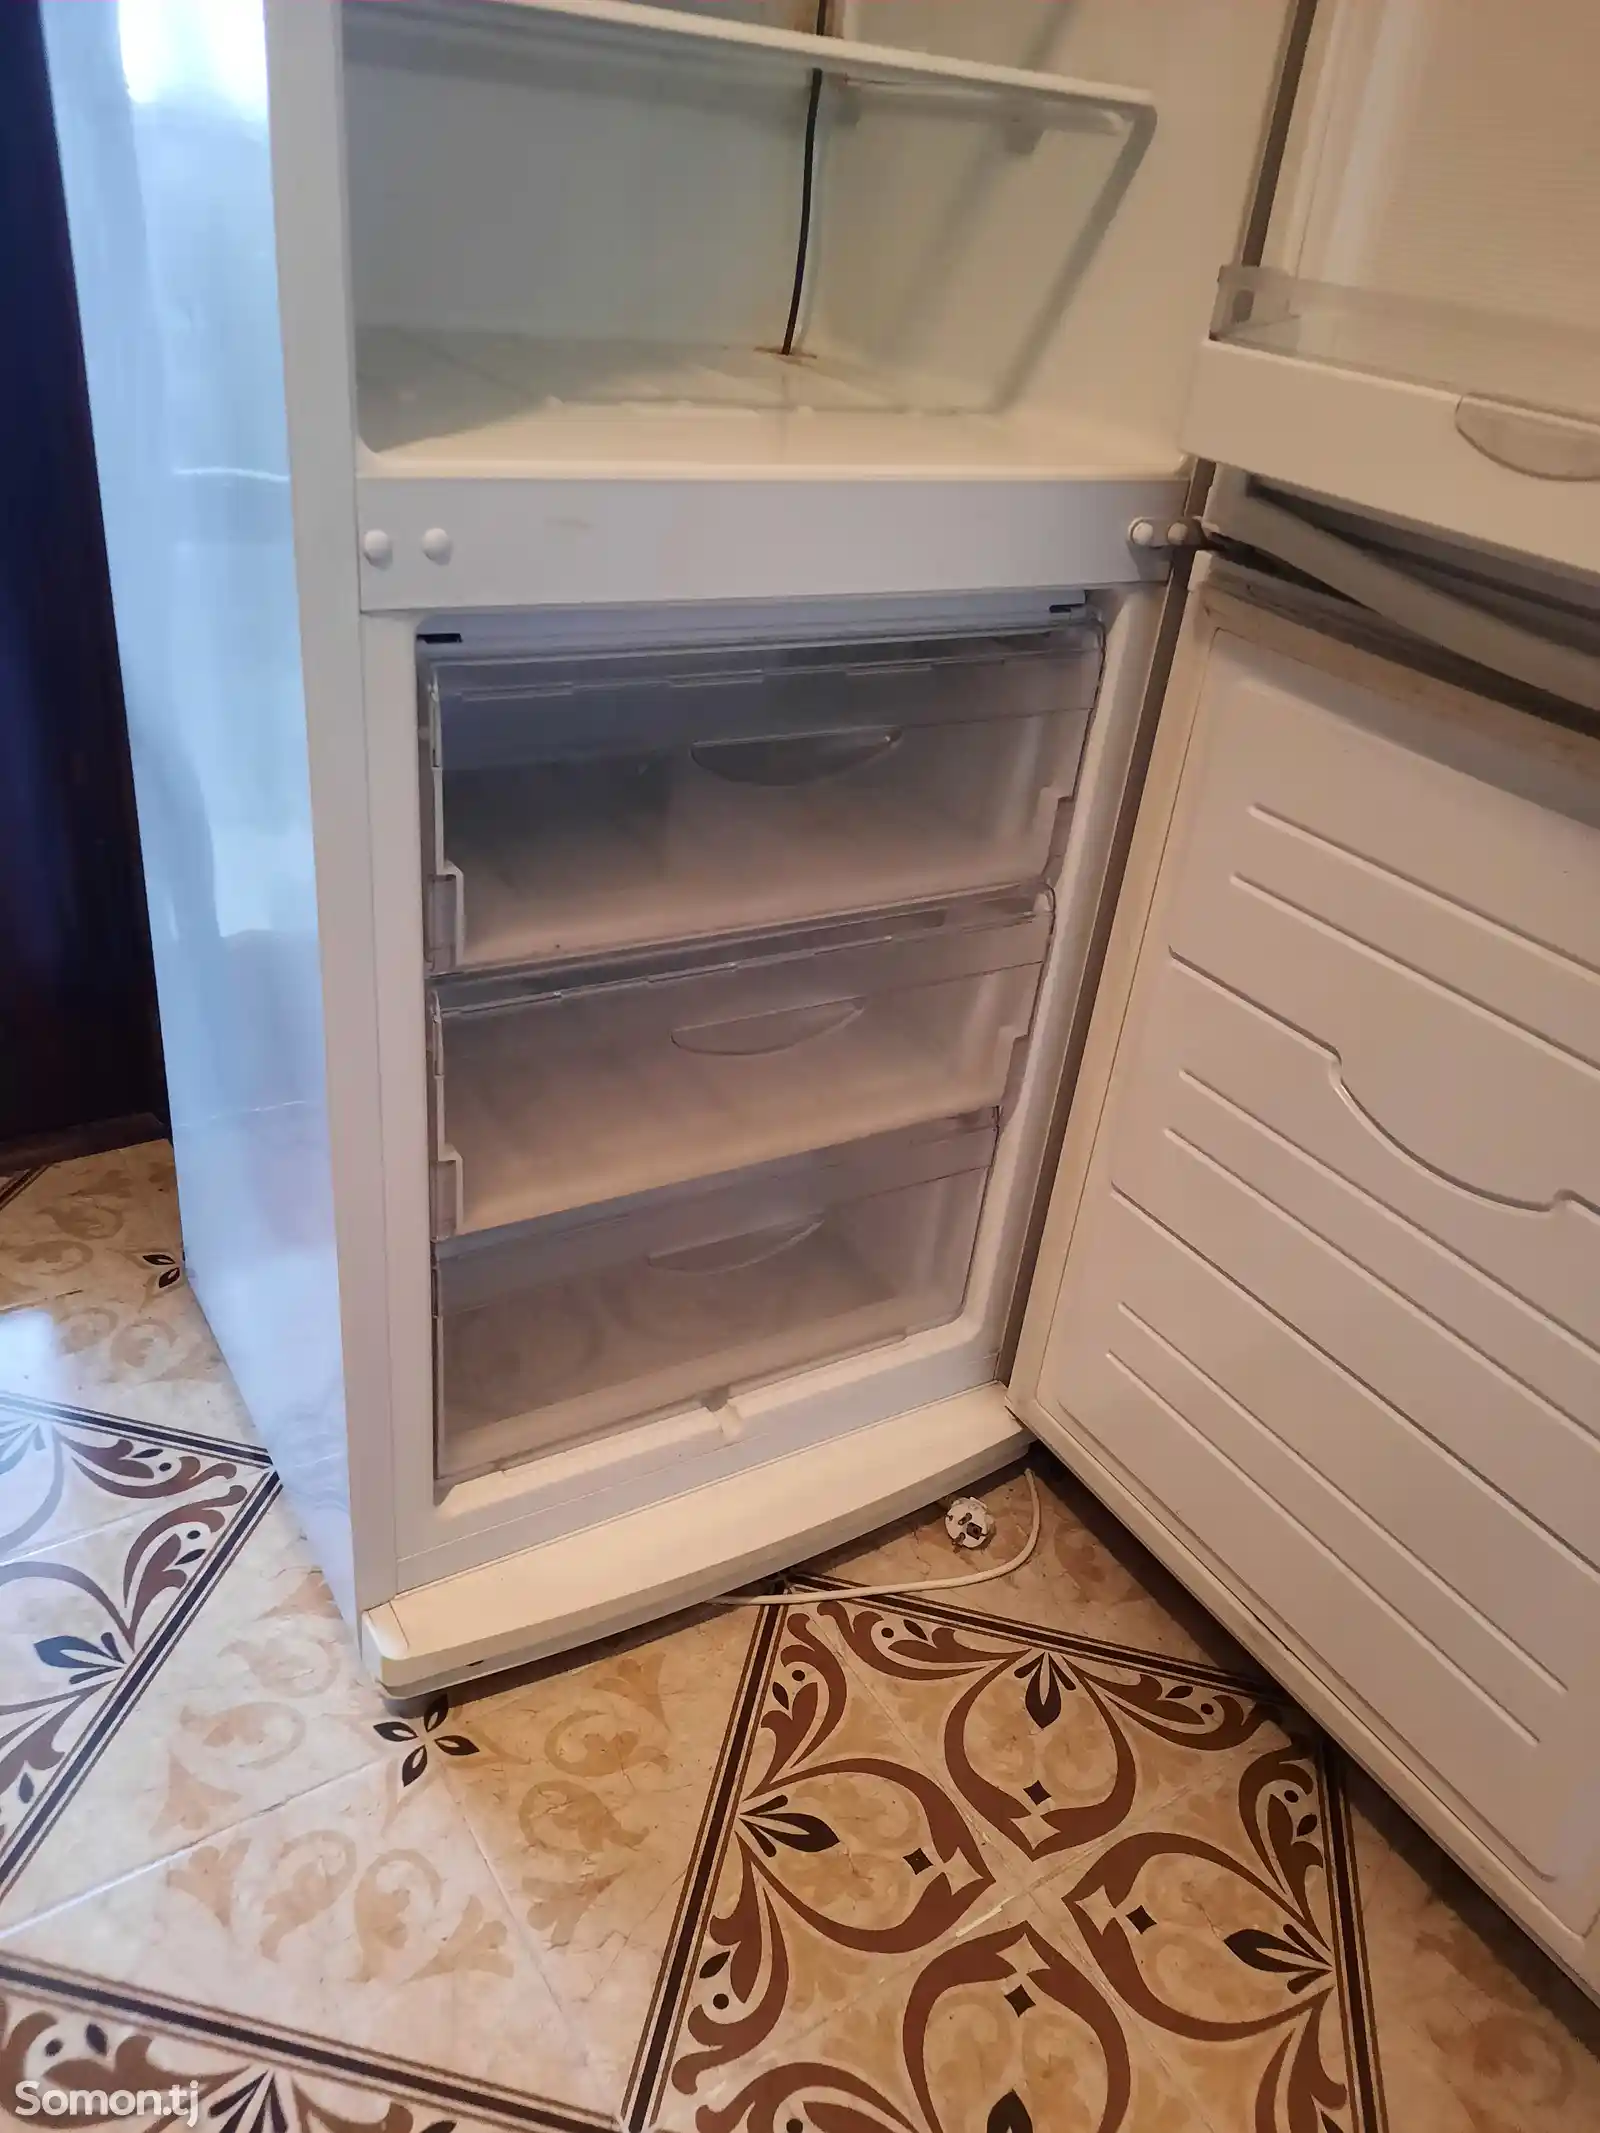 Холодильник Атлант-2